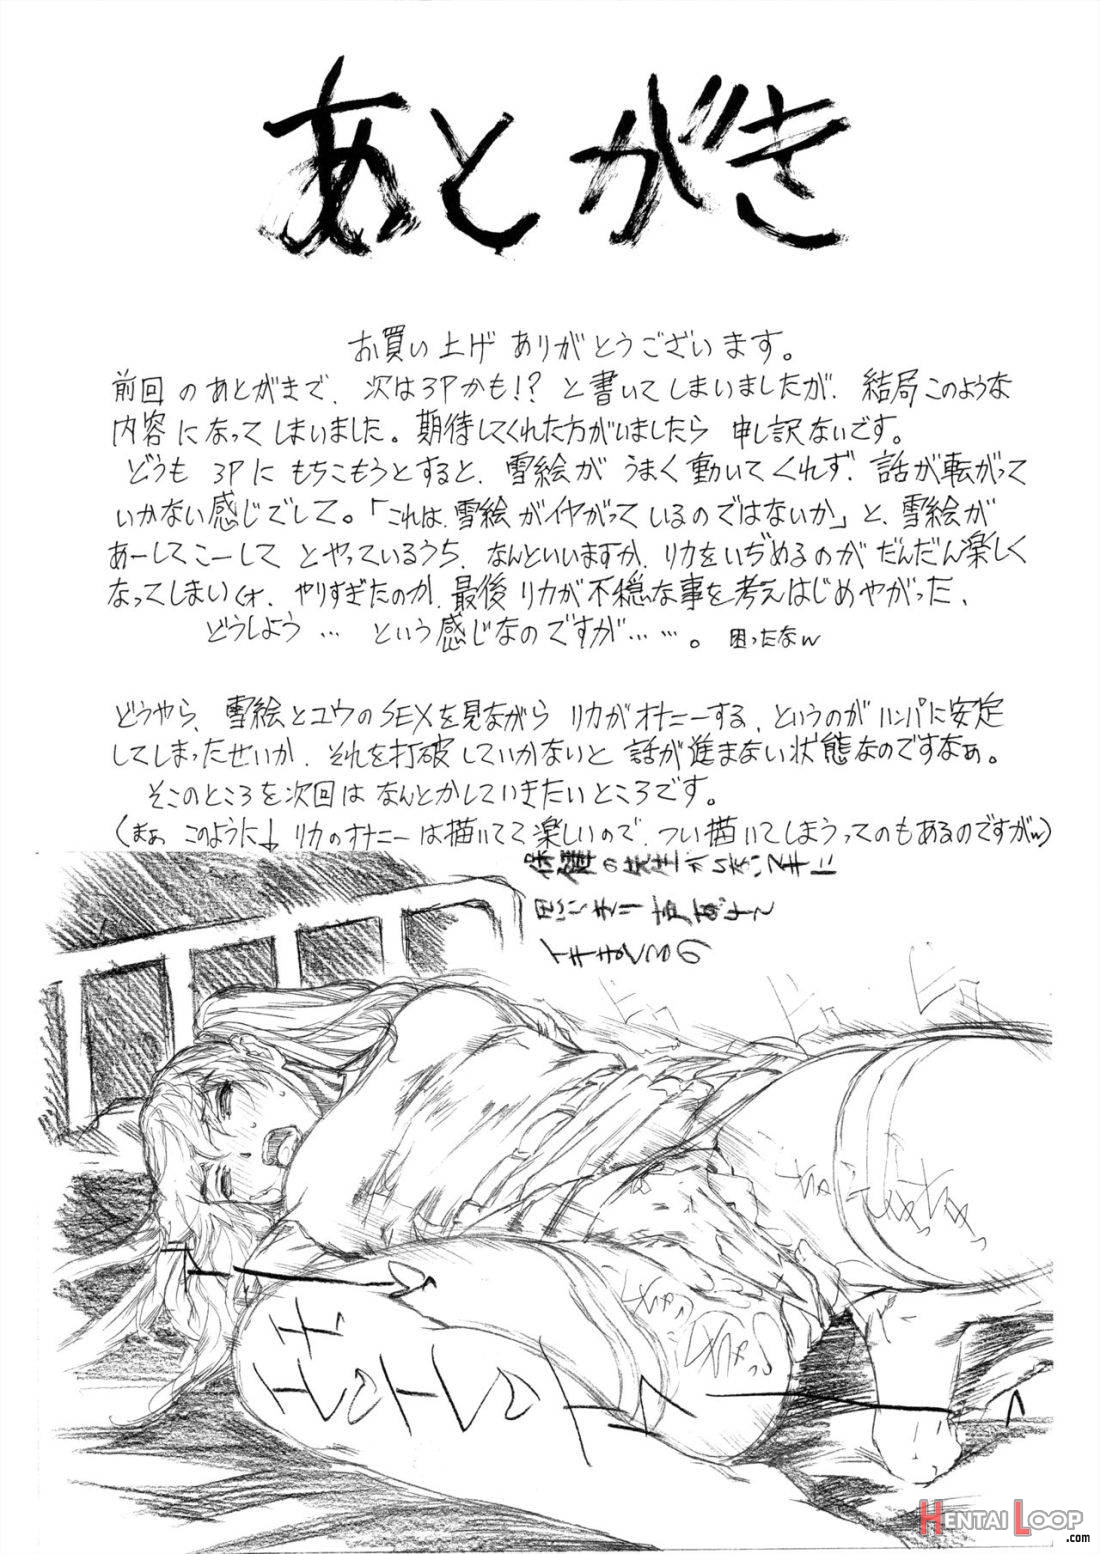 9-Ji Kara 5-ji Made no Koibito Dai 11 wa page 31